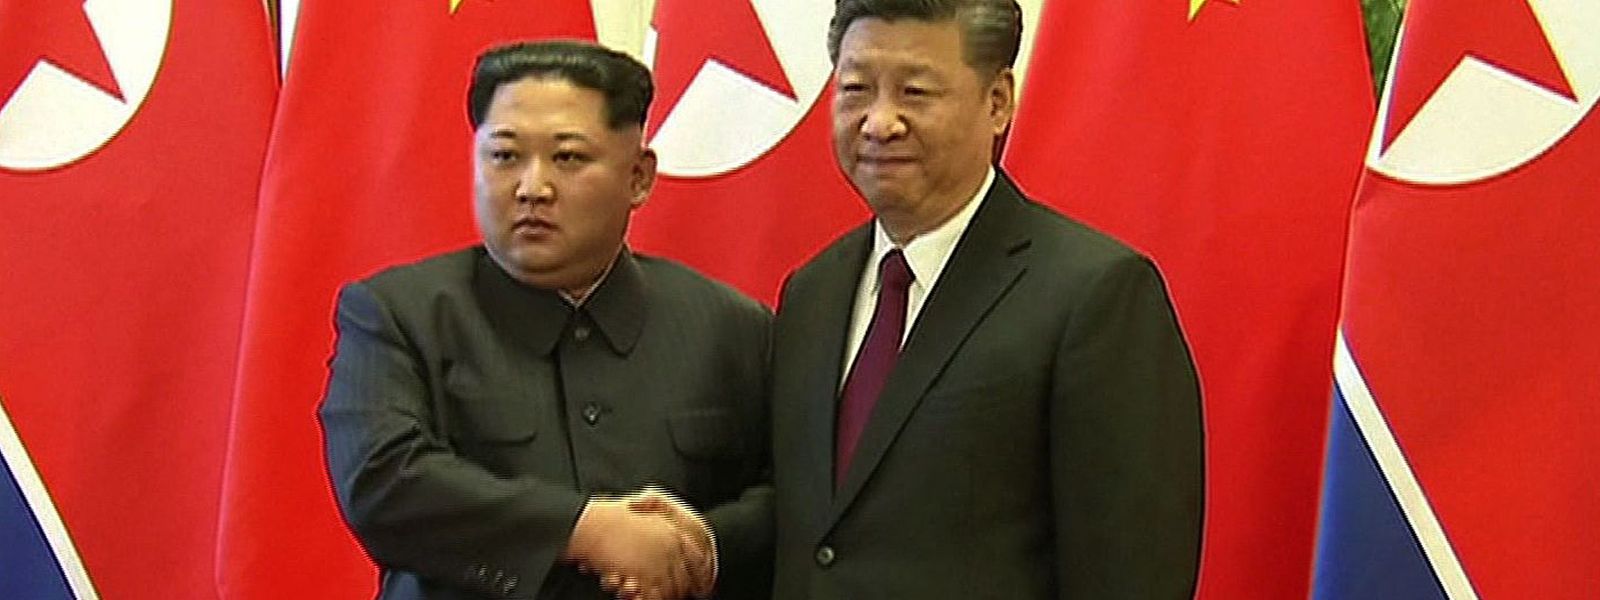 Mit der 24-stündigen Visite versuchte Kim Jong Un, die angespannten Beziehungen zu Peking zu verbessern.